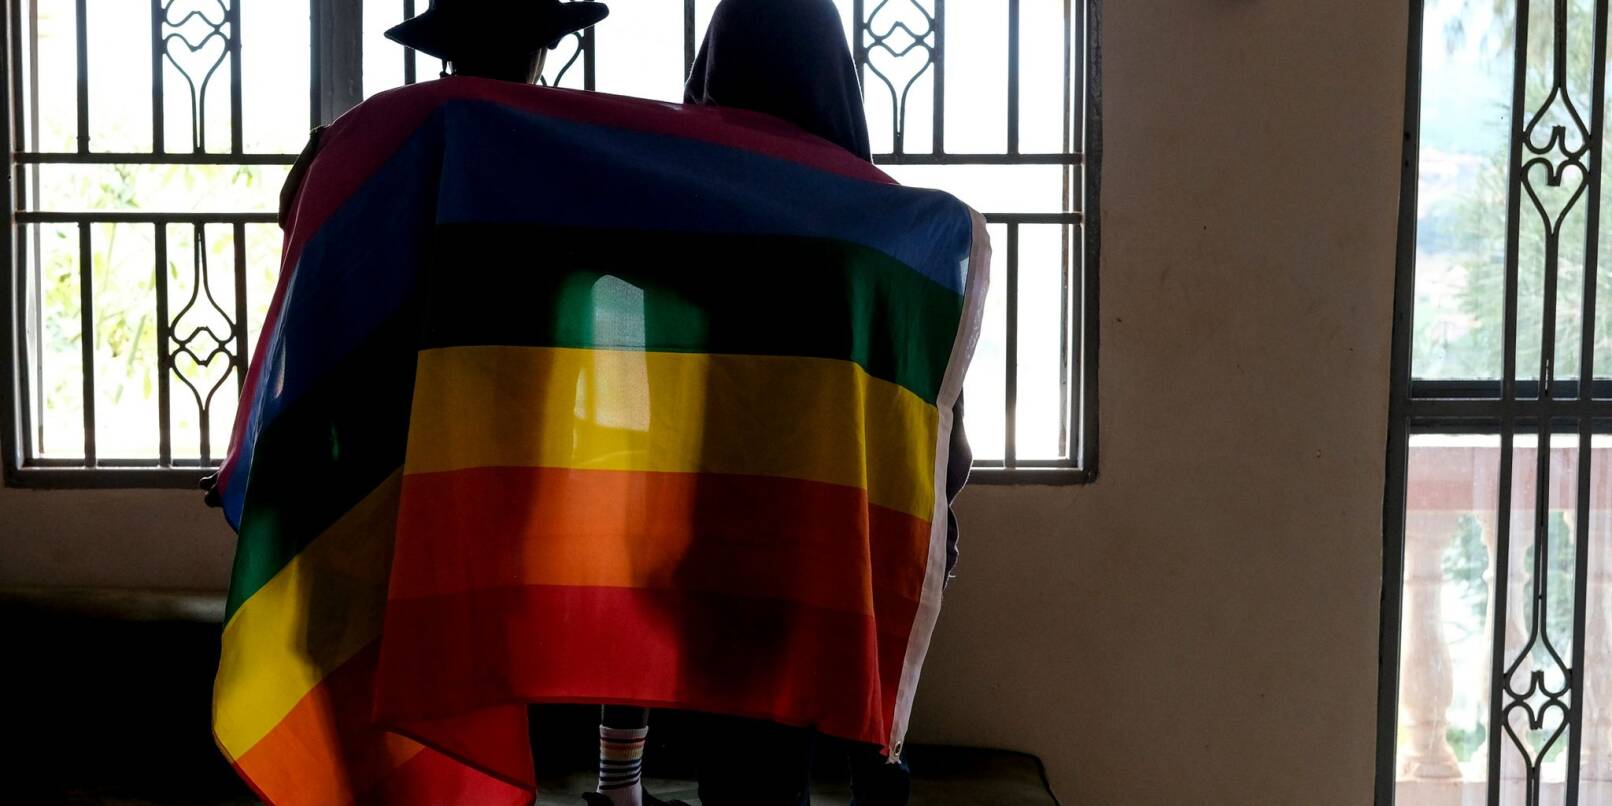 Immer wieder gab es in den vergangenen Jahren in Uganda Versuche verschiedener gesellschaftlicher Gruppen, schärfere Gesetze gegen homosexuelle Menschen einzuführen.